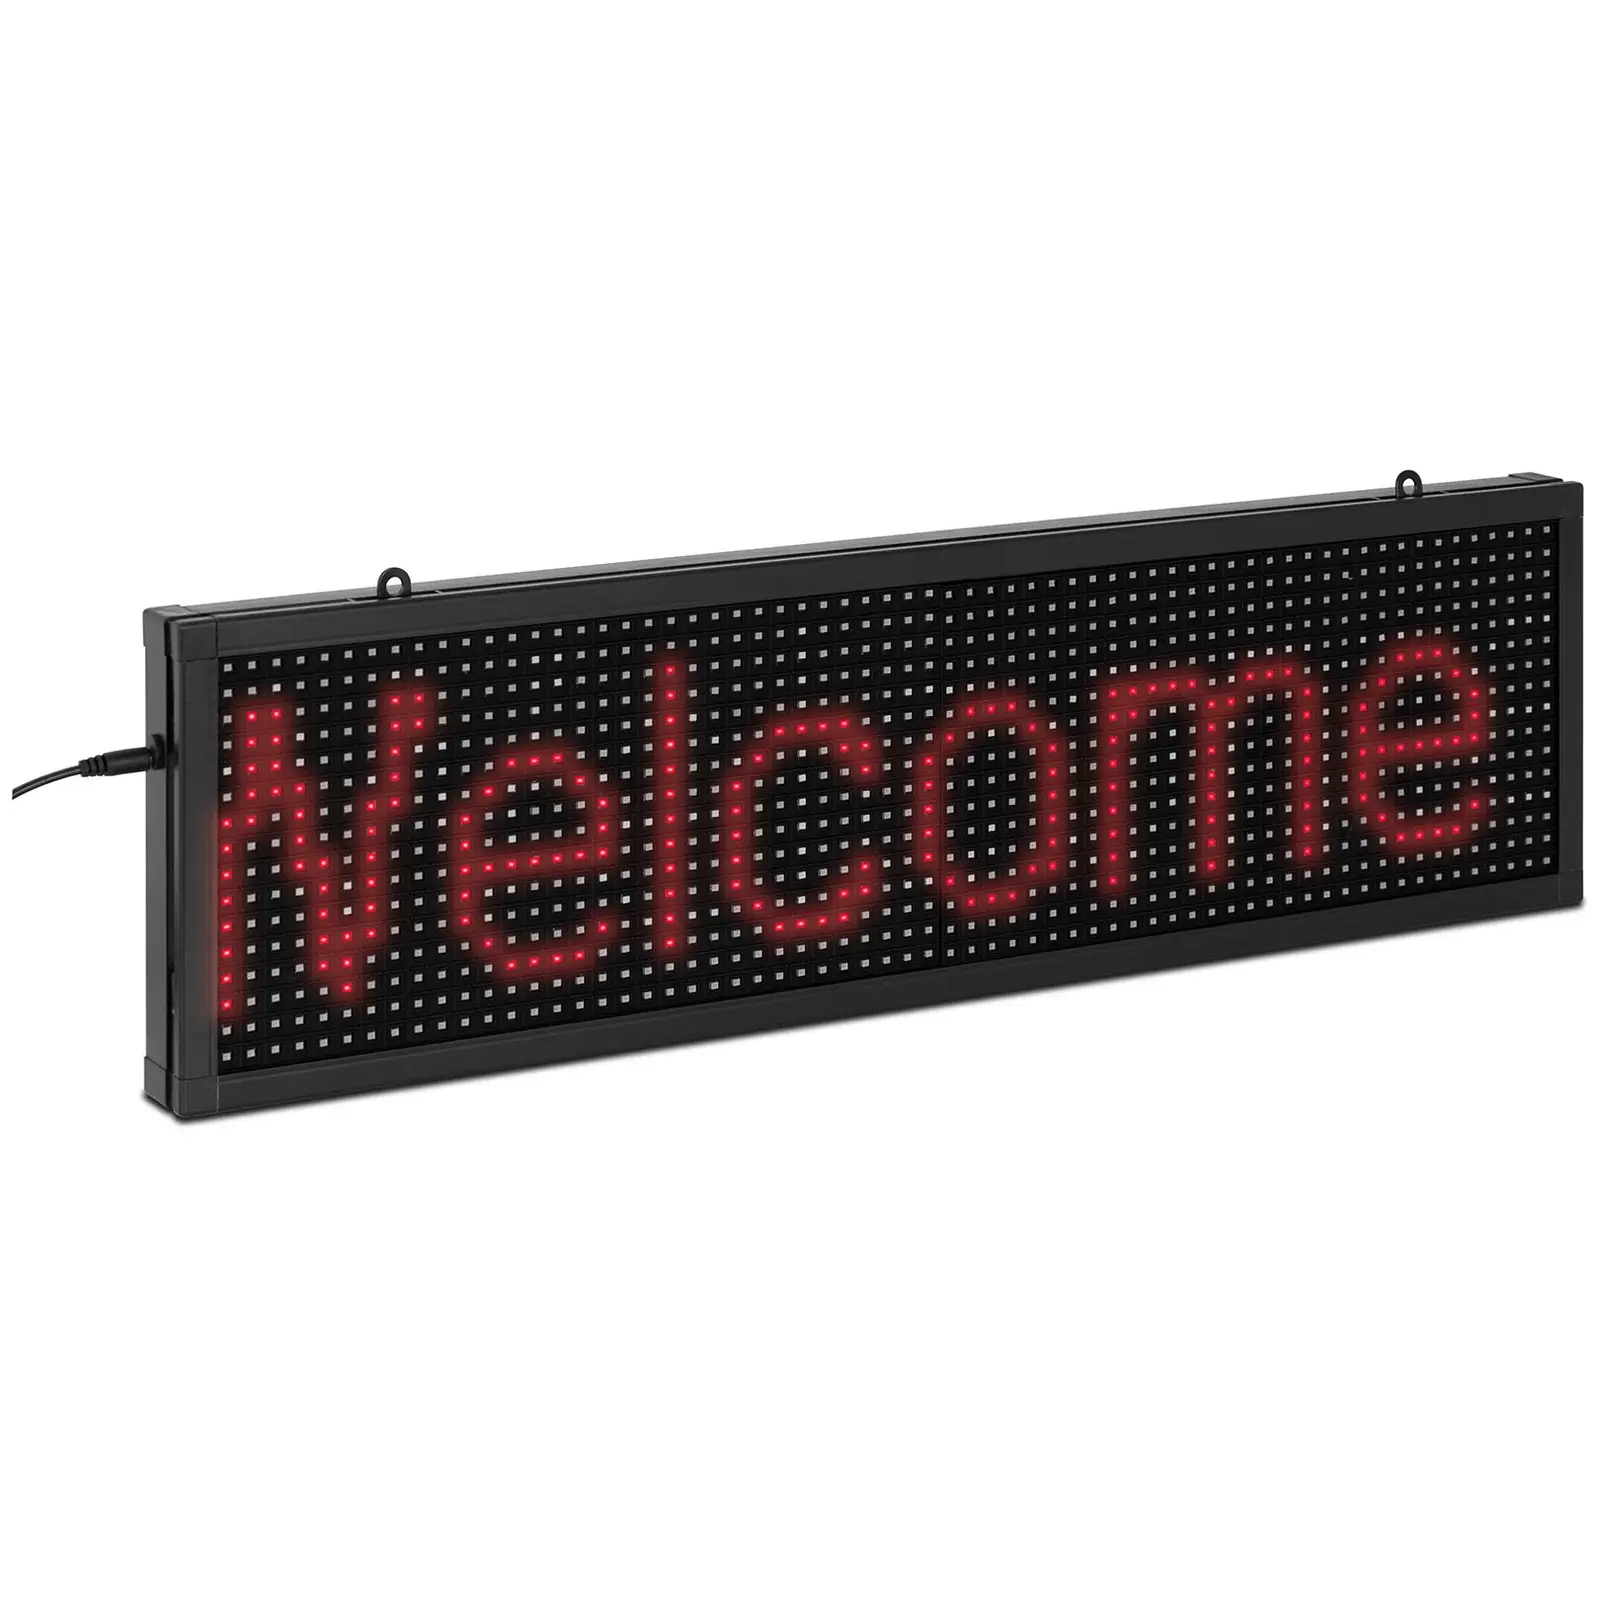 Panneau publicitaire LED - 64 x 16 LED rouge - 67 x 19 cm - Programmable via iOS/Android